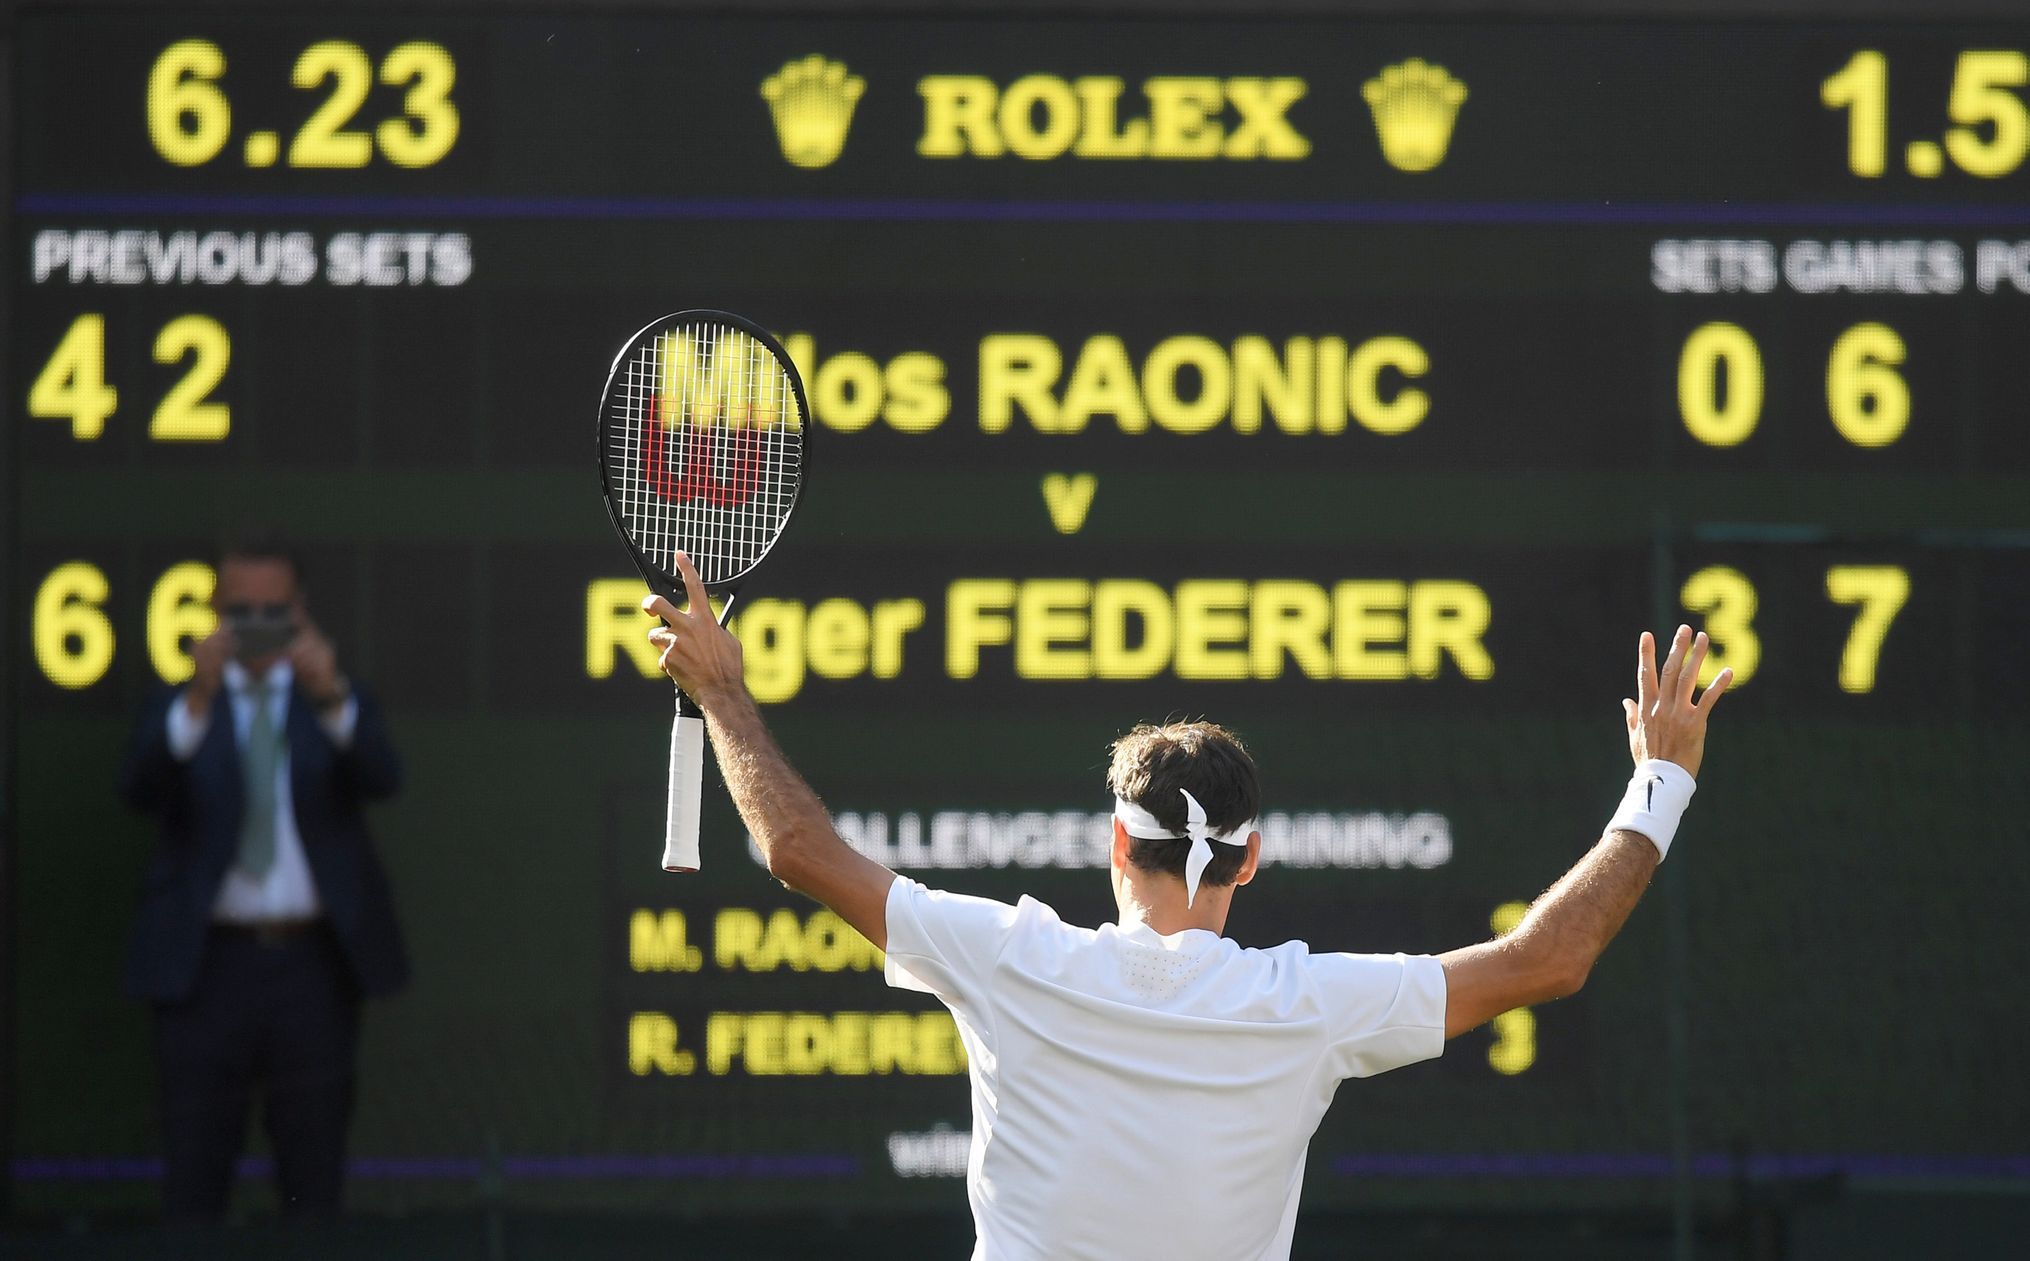 Roger Federer se raduje po vítězství nad Milošem Raoničem ve čtvrtfinále Wimbledonu 2017